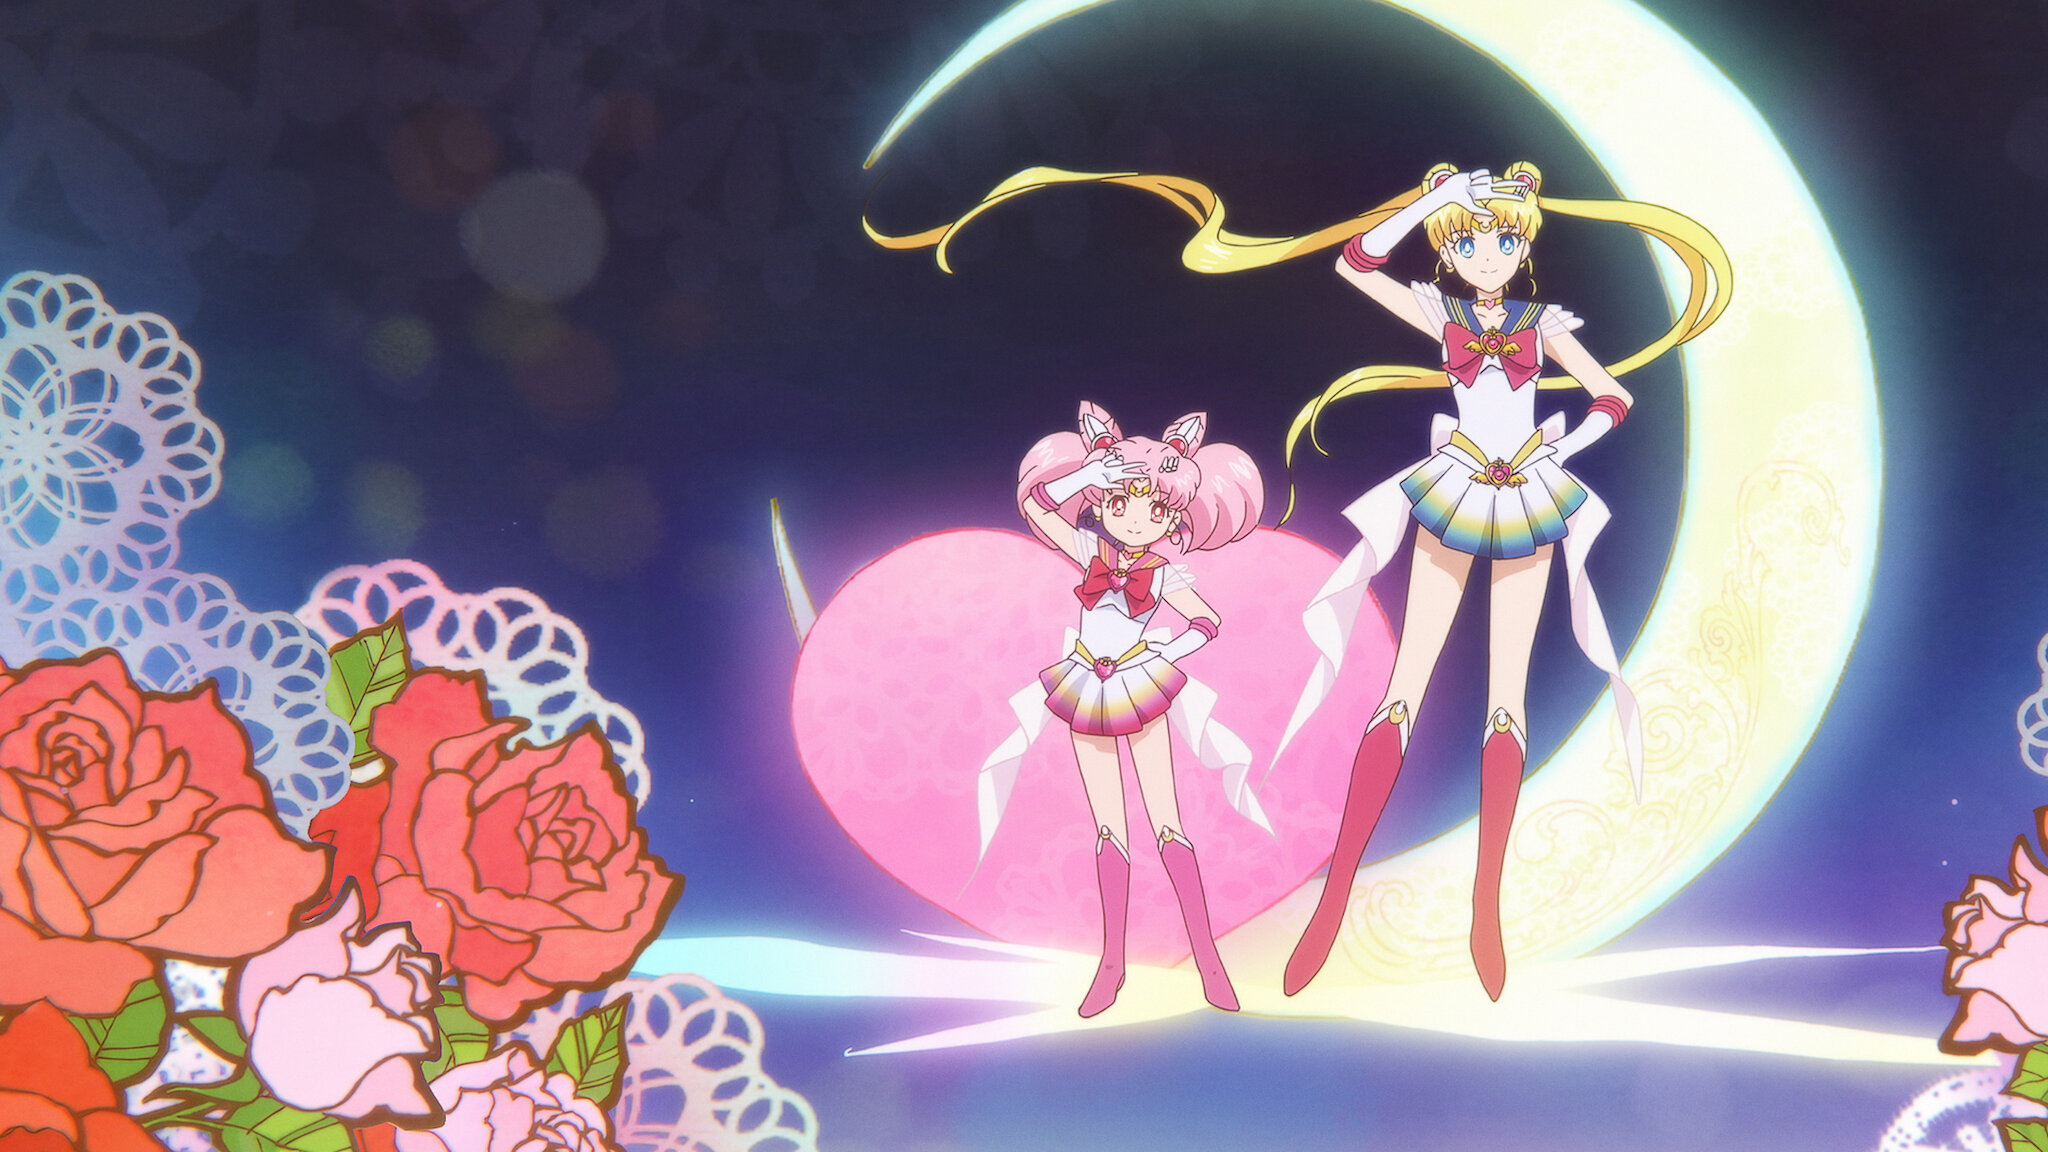 代表月亮消灭你！Sailor Moon Eternal 剧场版电影上线 Netflix (6/3)